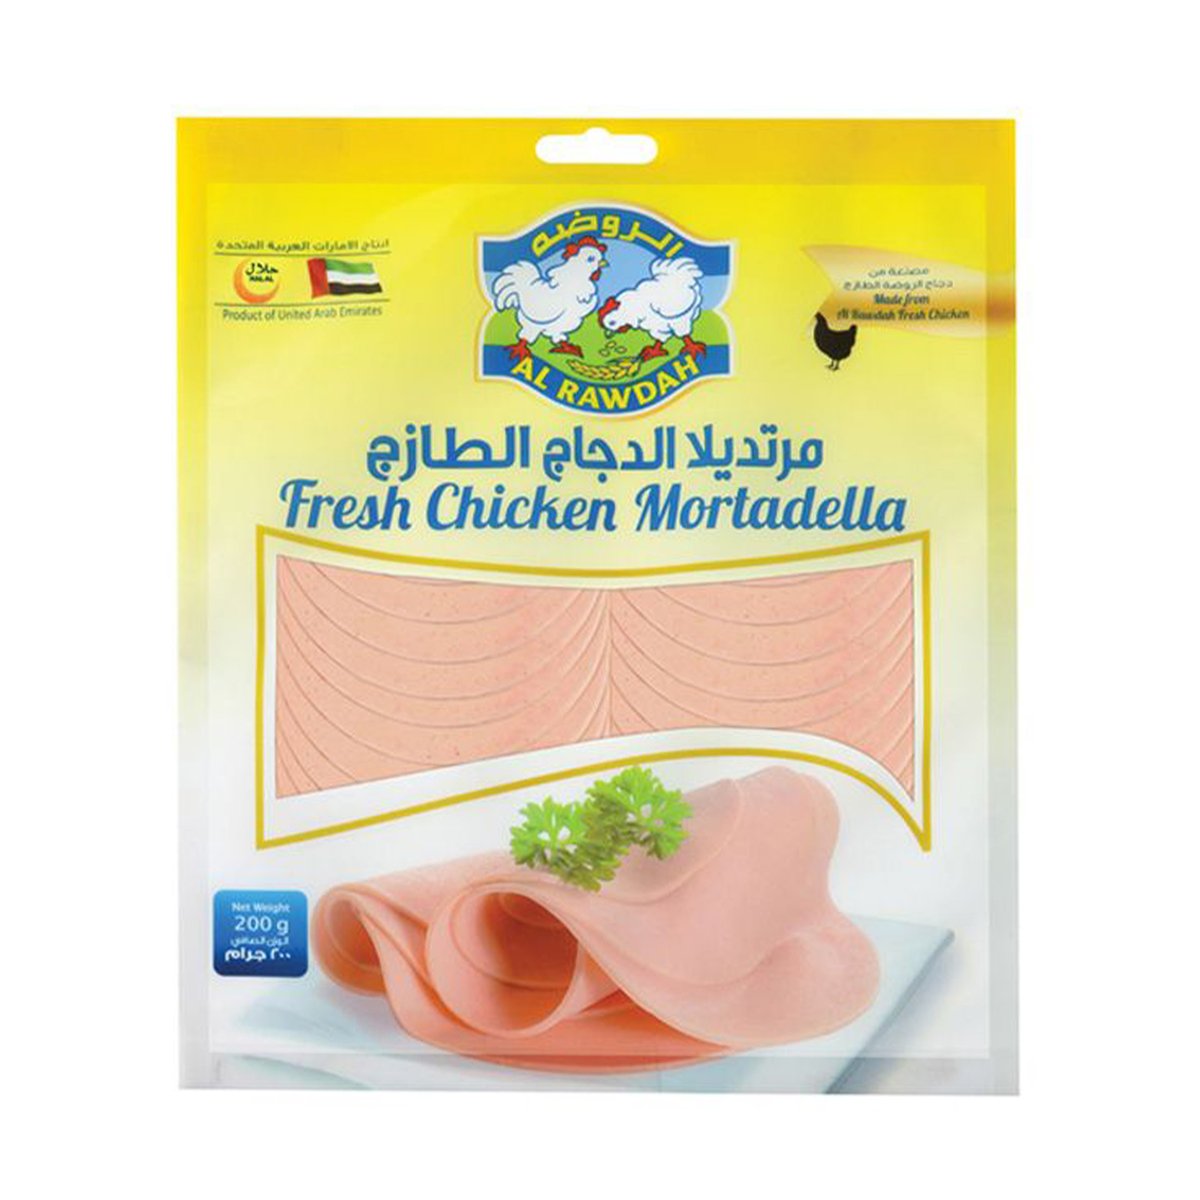 Al Rawdah Chicken Mortadella Plain 200 g